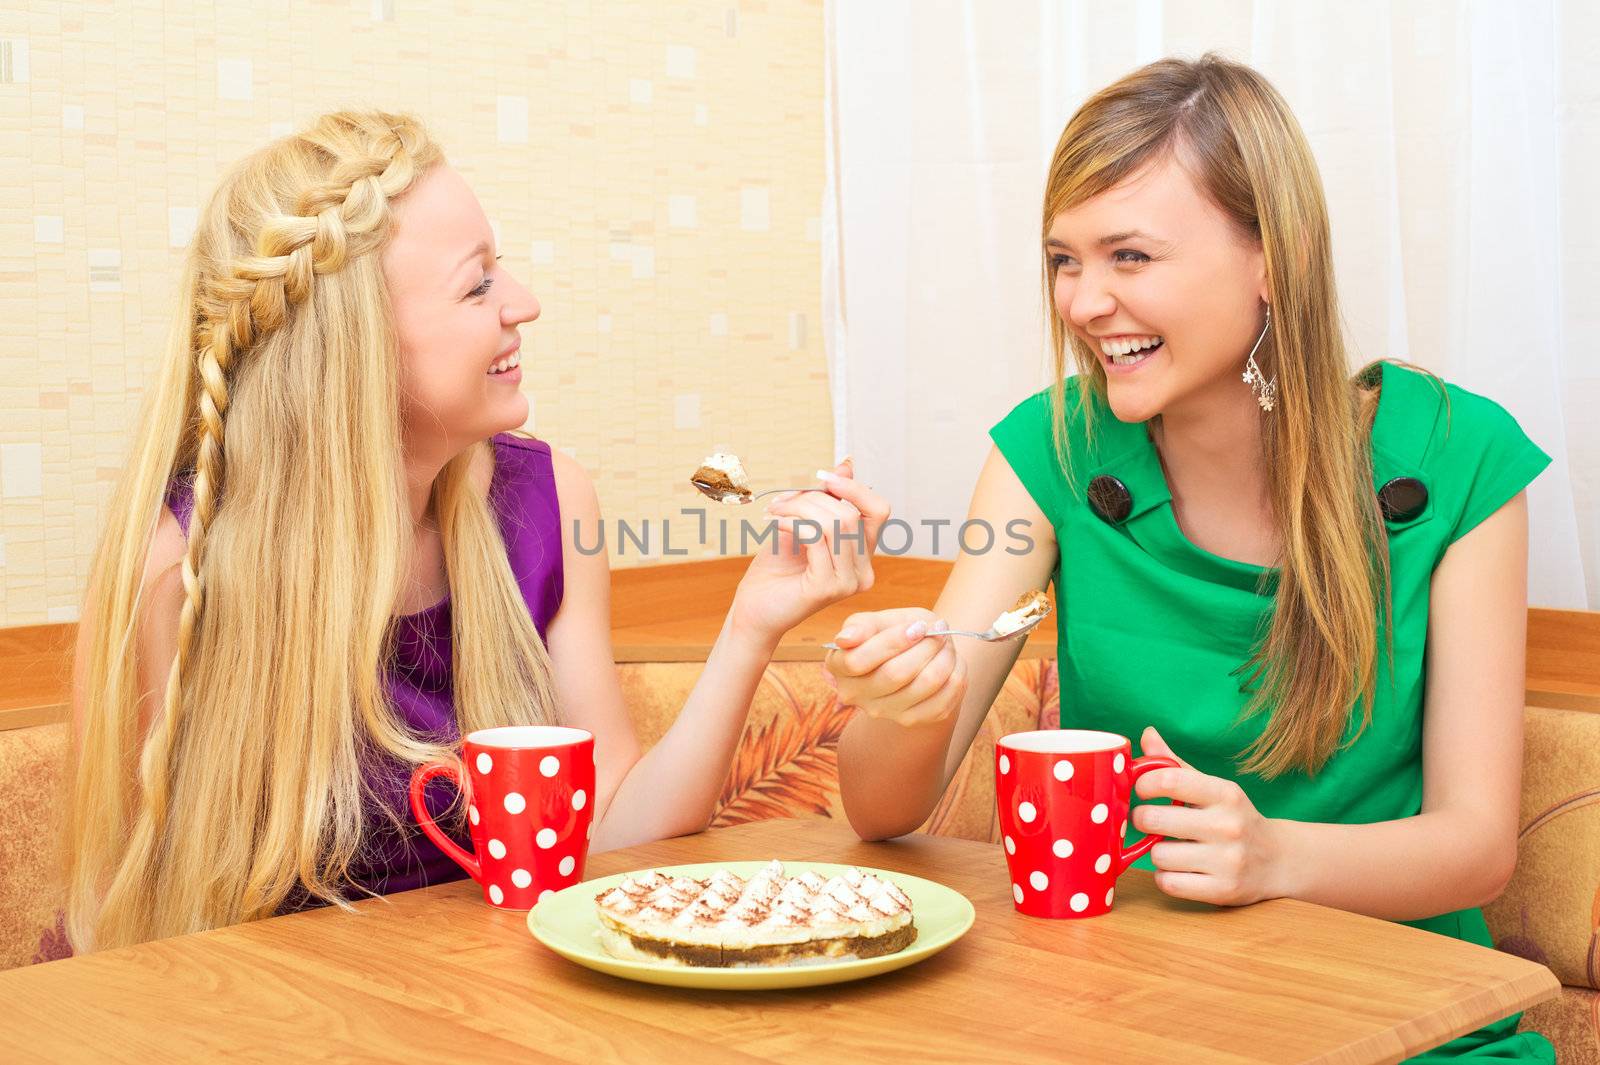 Girls Enjoying Tea and Cake by petr_malyshev